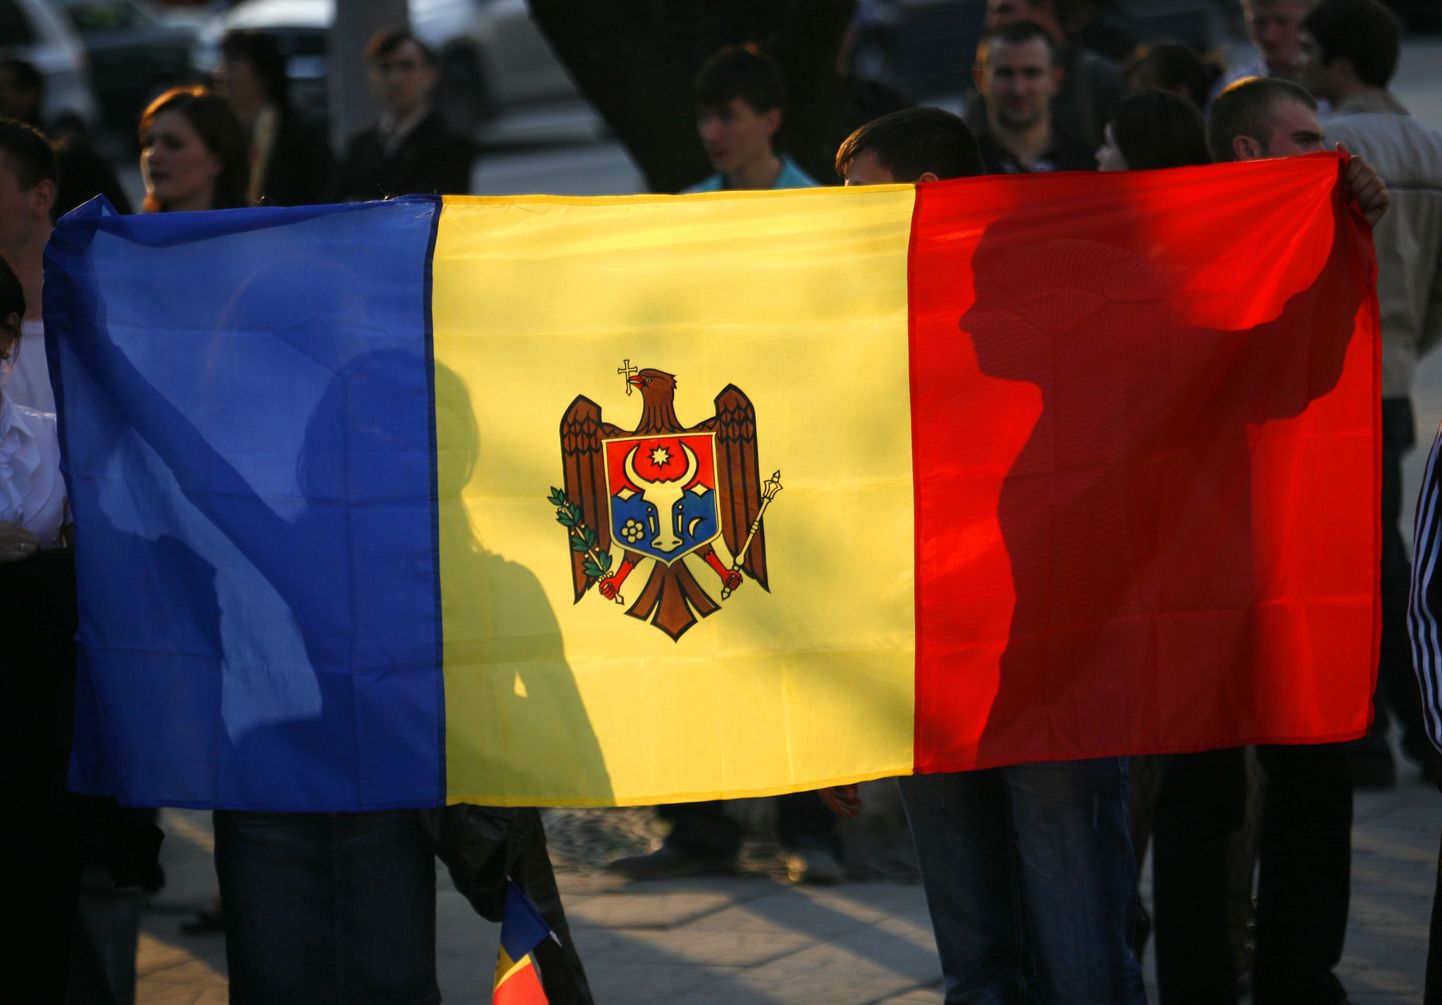 Флаг Молдавии.